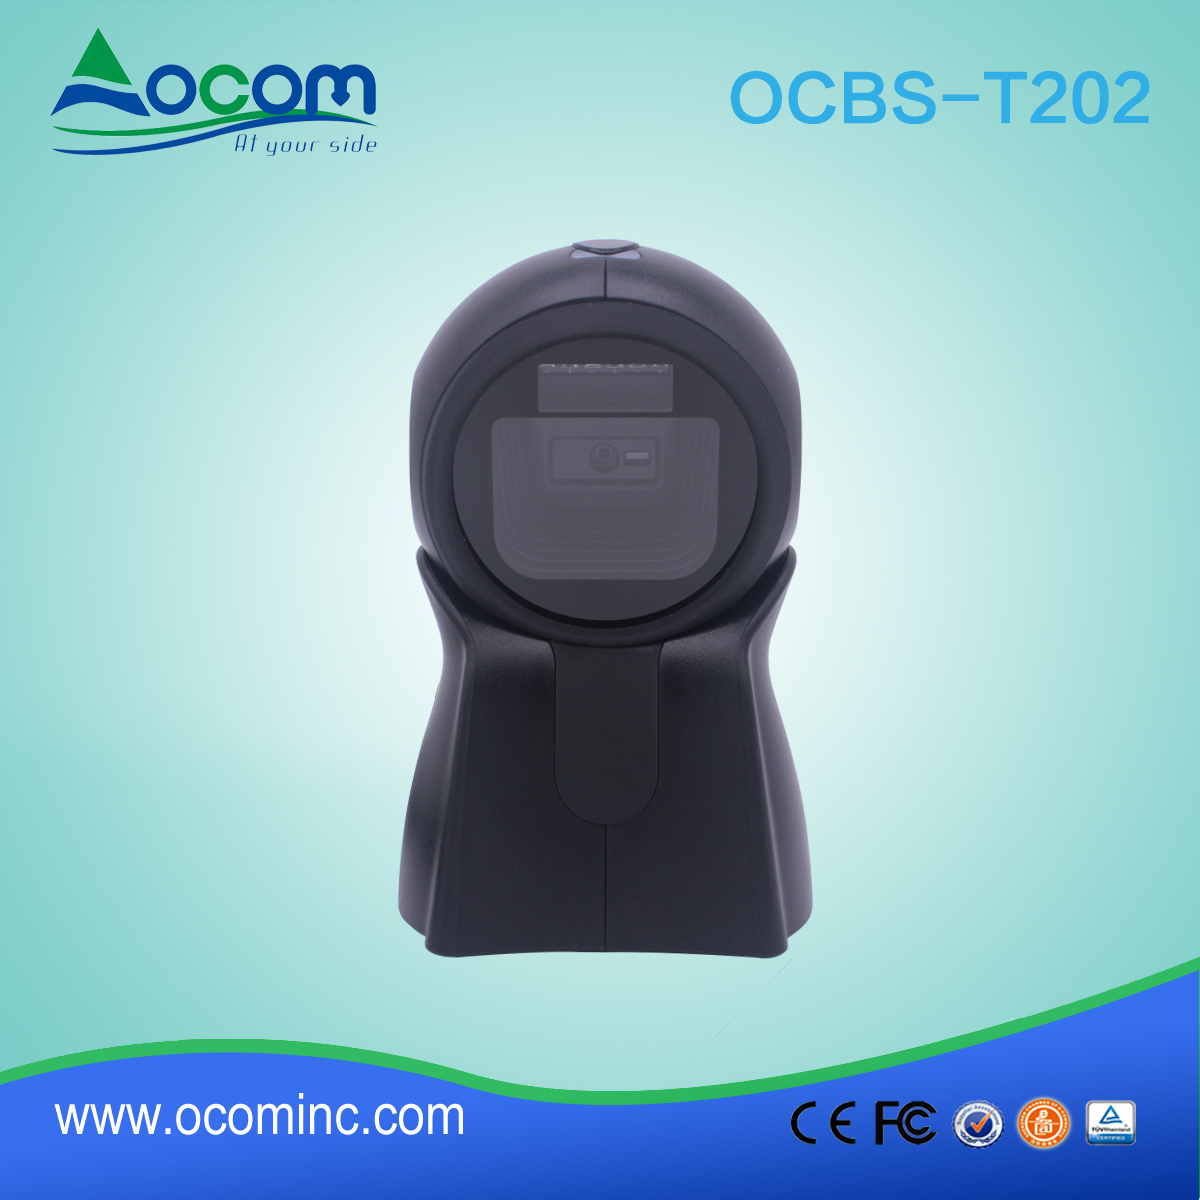 ОКБС-Т202---китайский сканер штрих-кодов высокого качества